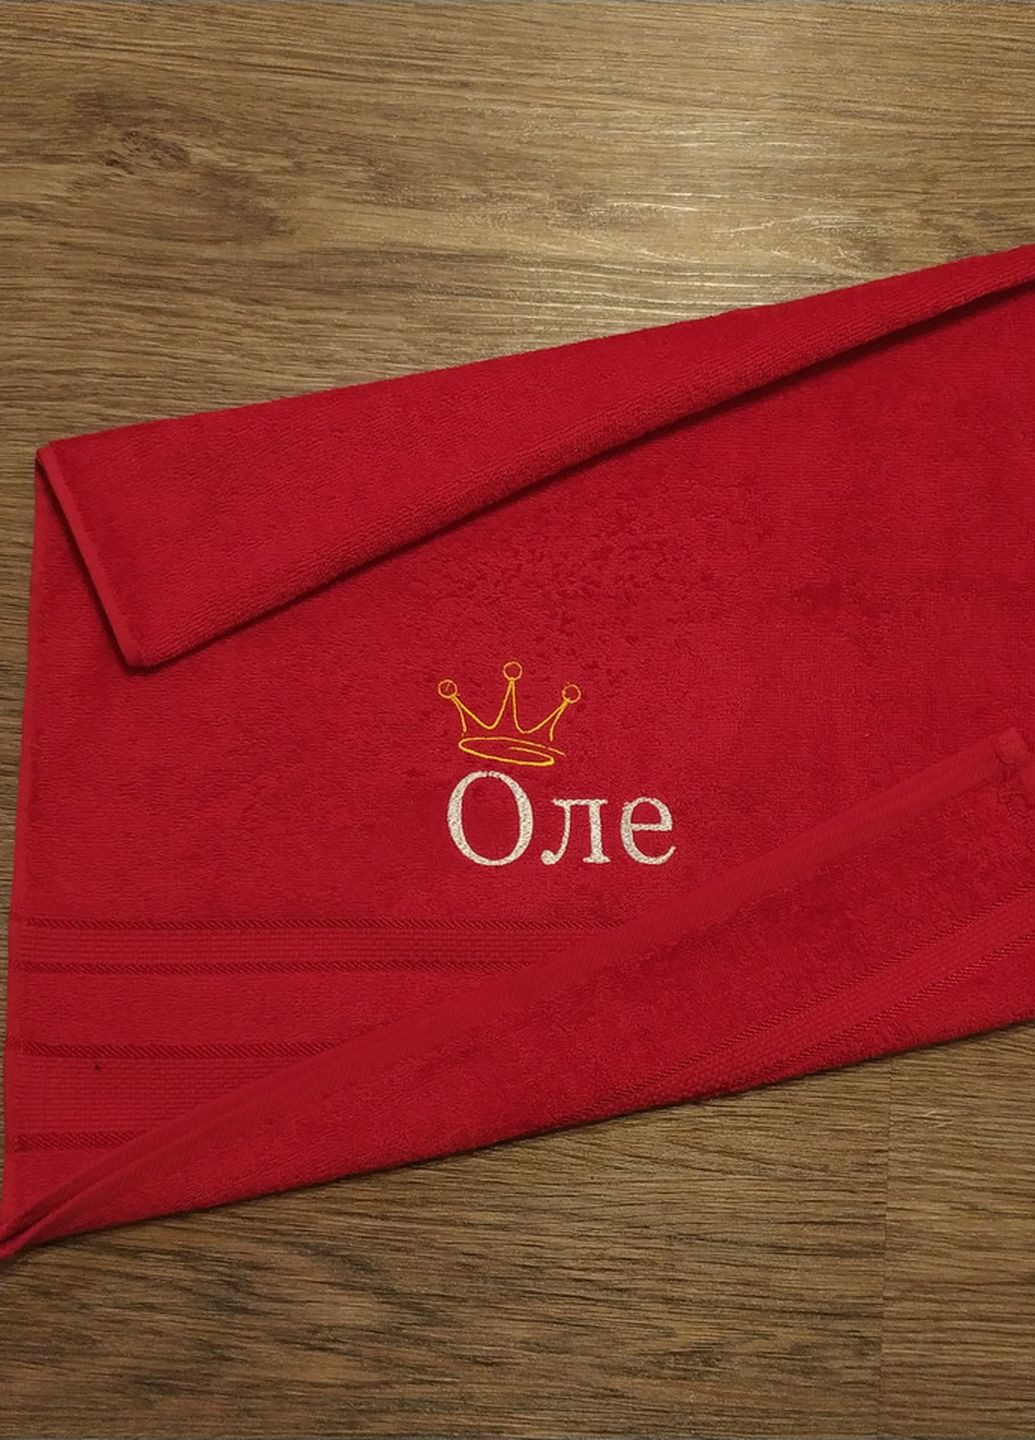 No Brand полотенце с именной вышивкой махровое лицевое 50*90 красный ольга 04255 однотонный красный производство - Украина